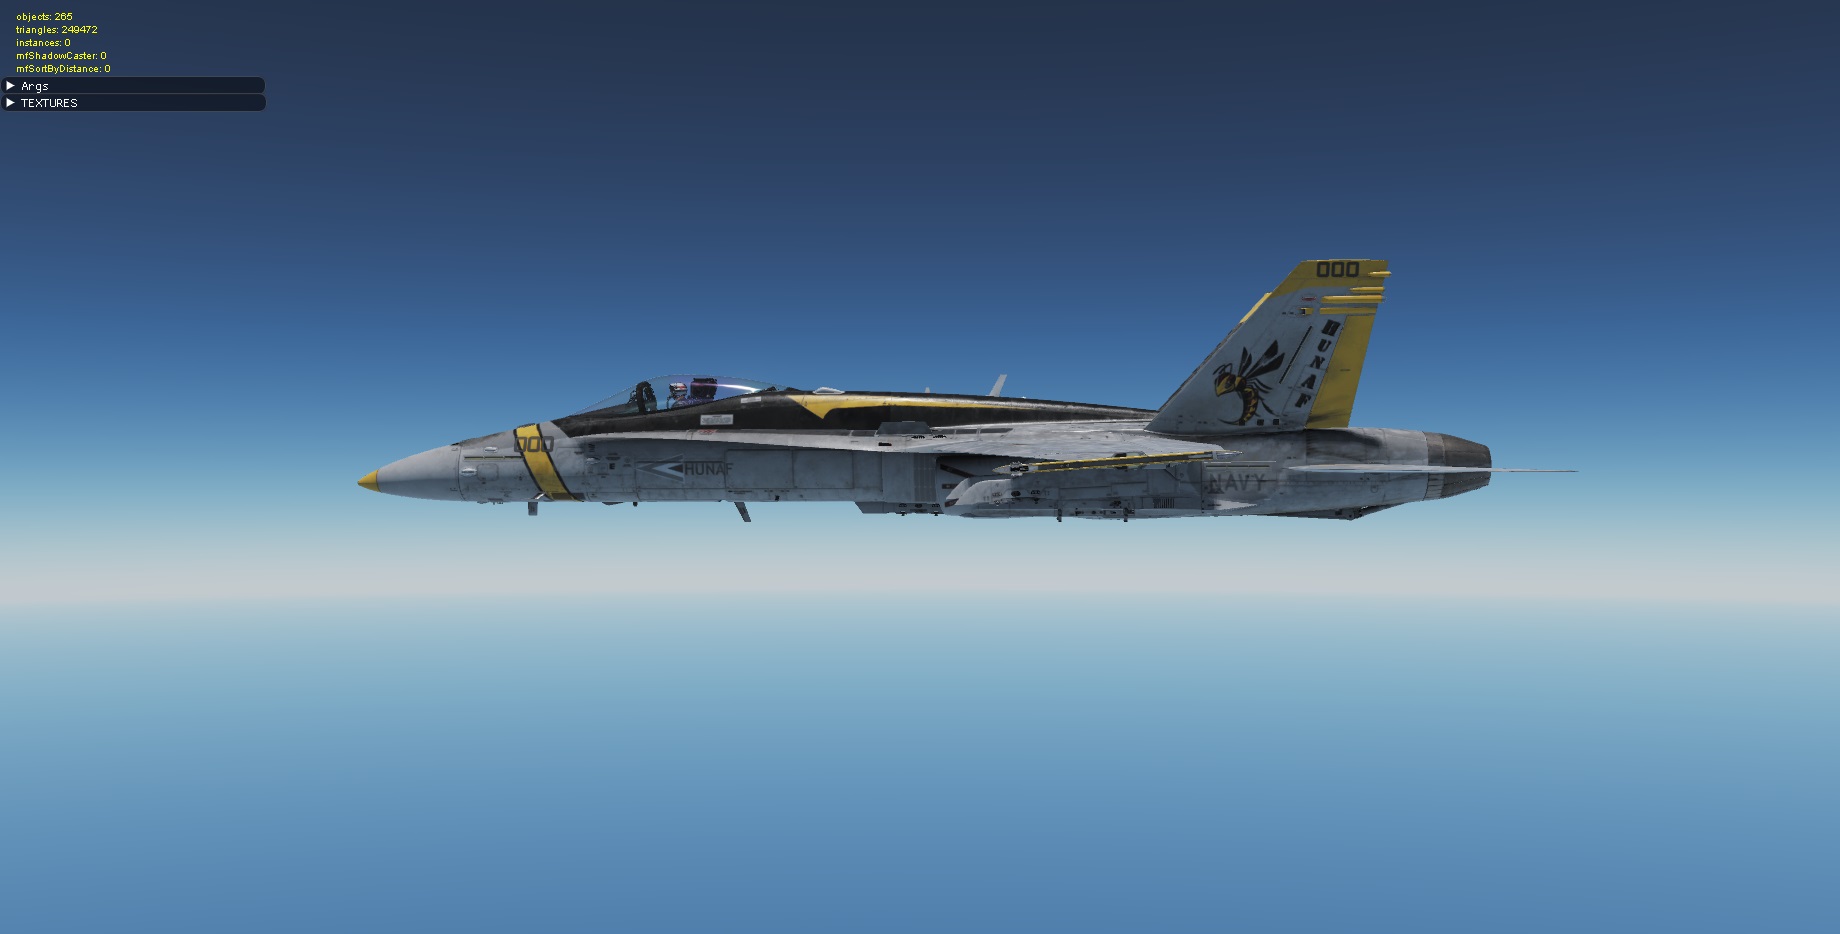 Hungarian F-18C Ghost by Ga-Bika 1.1 (fictional)